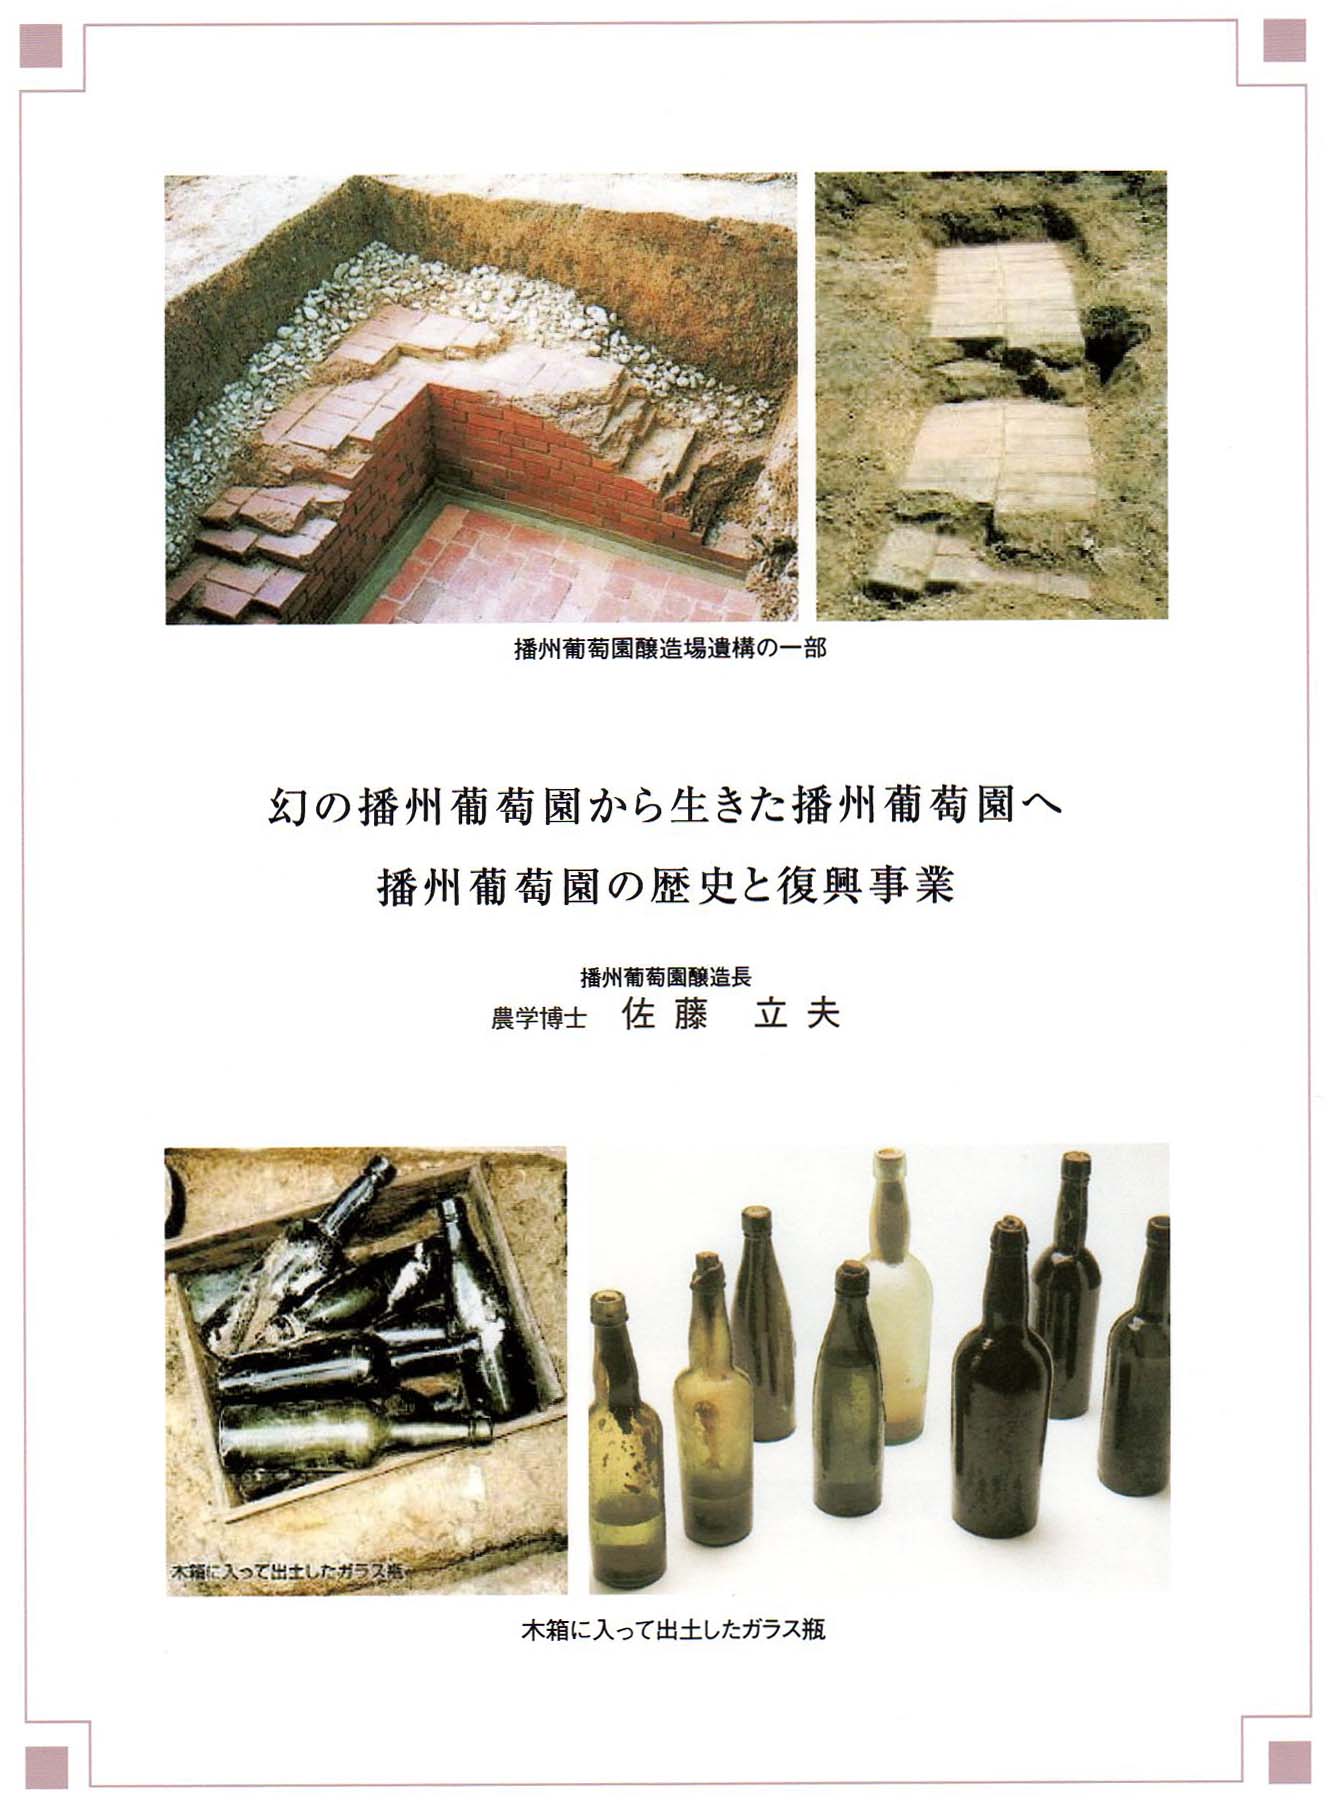 播州葡萄園の歴史と復興事業